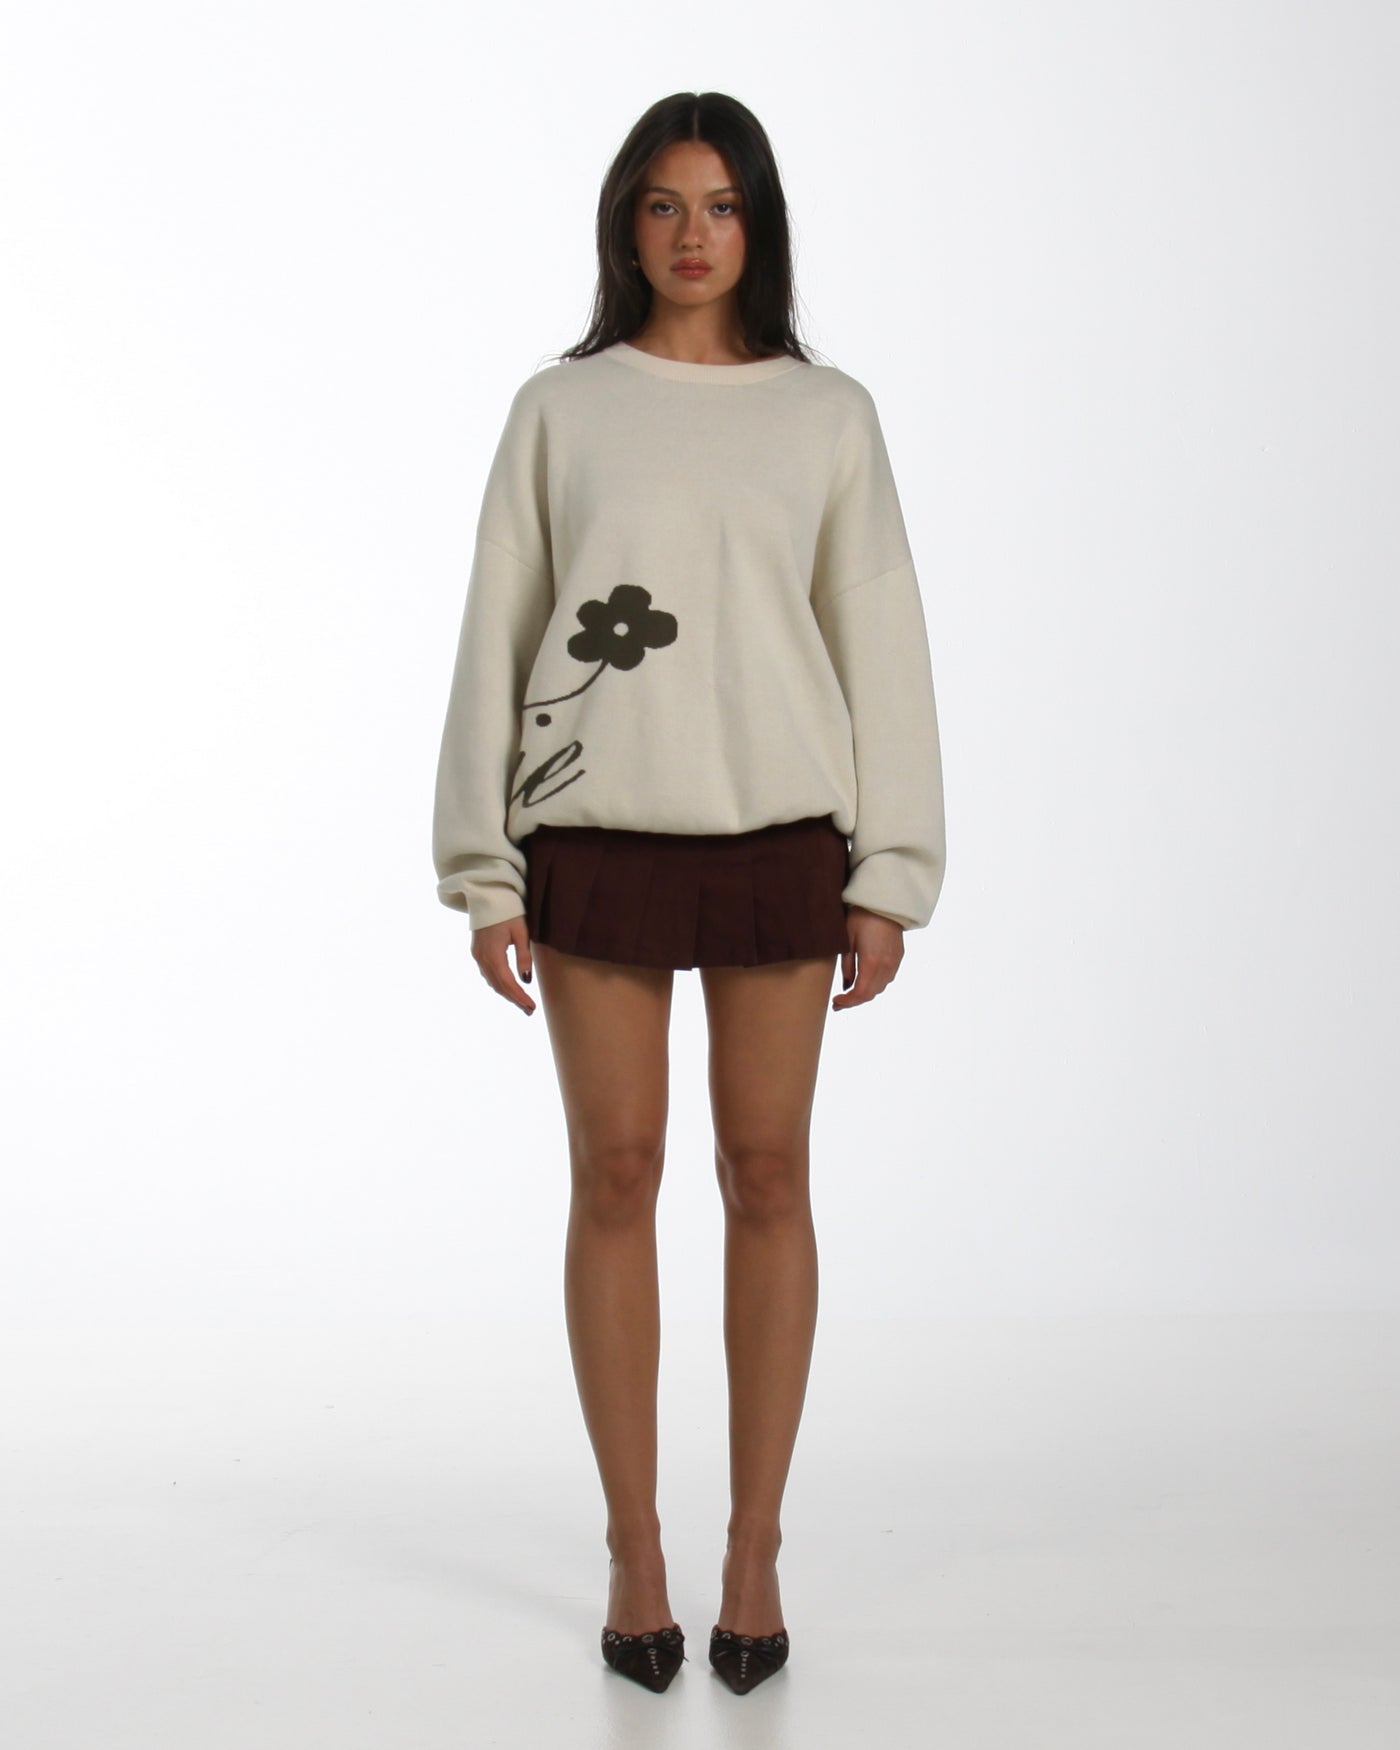 Cursive Sweater Neutral